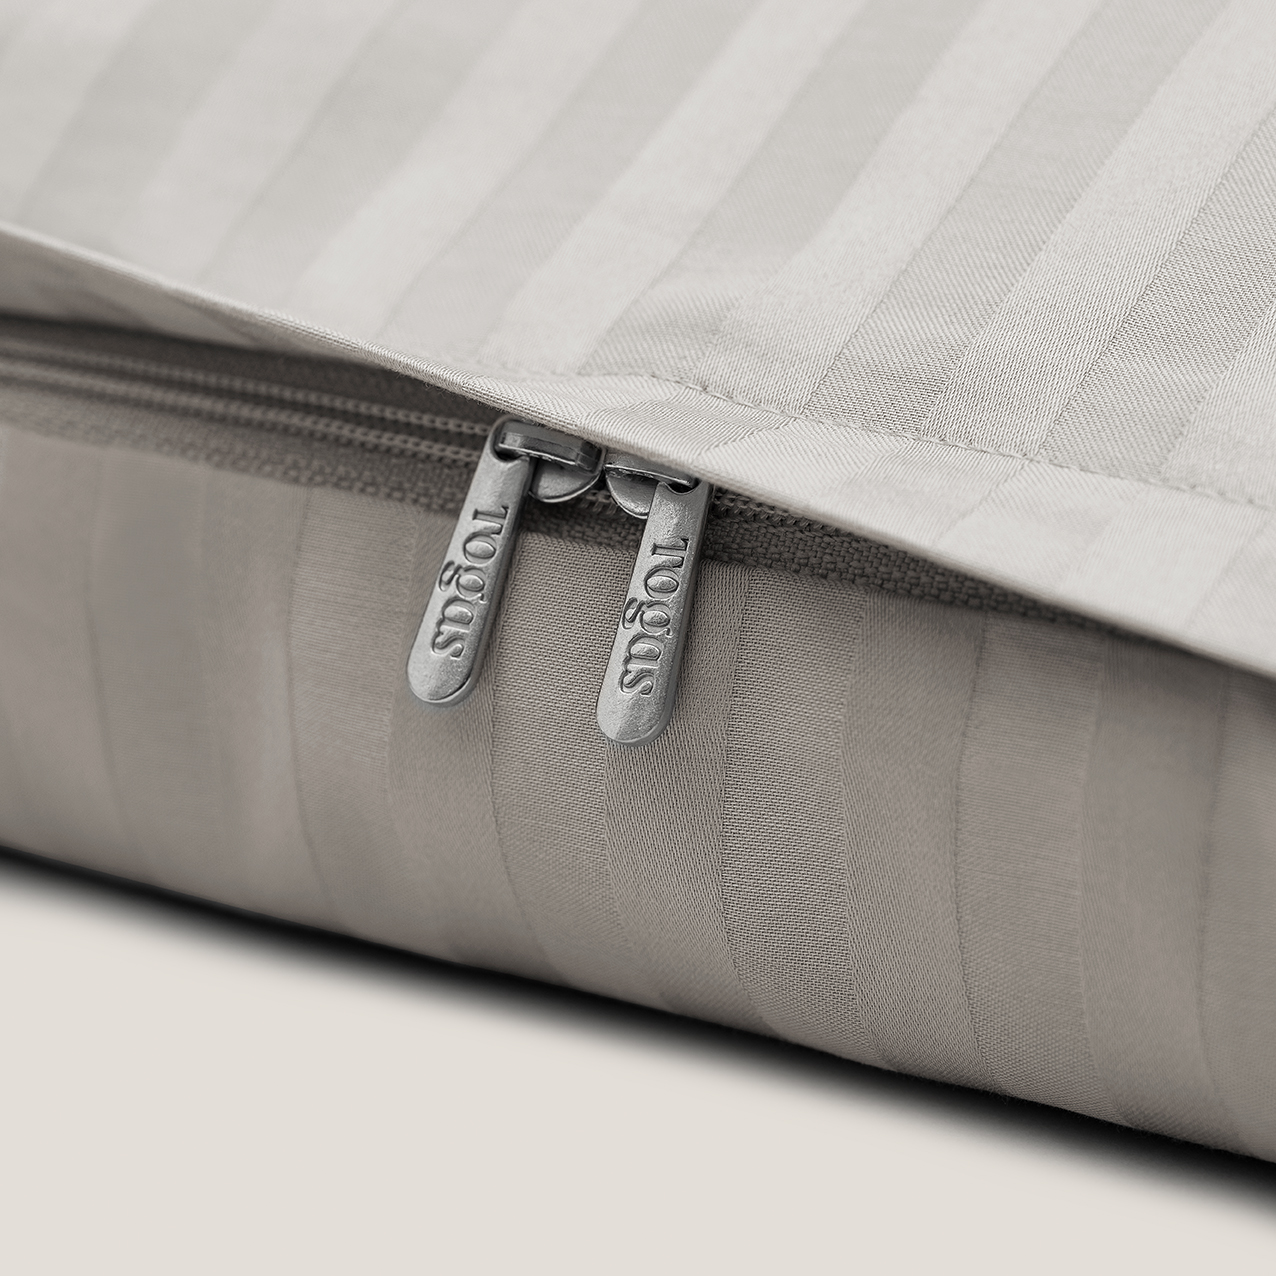 Комплект постельного белья Togas Ларье серый Двуспальный кинг сайз, размер Кинг сайз - фото 8